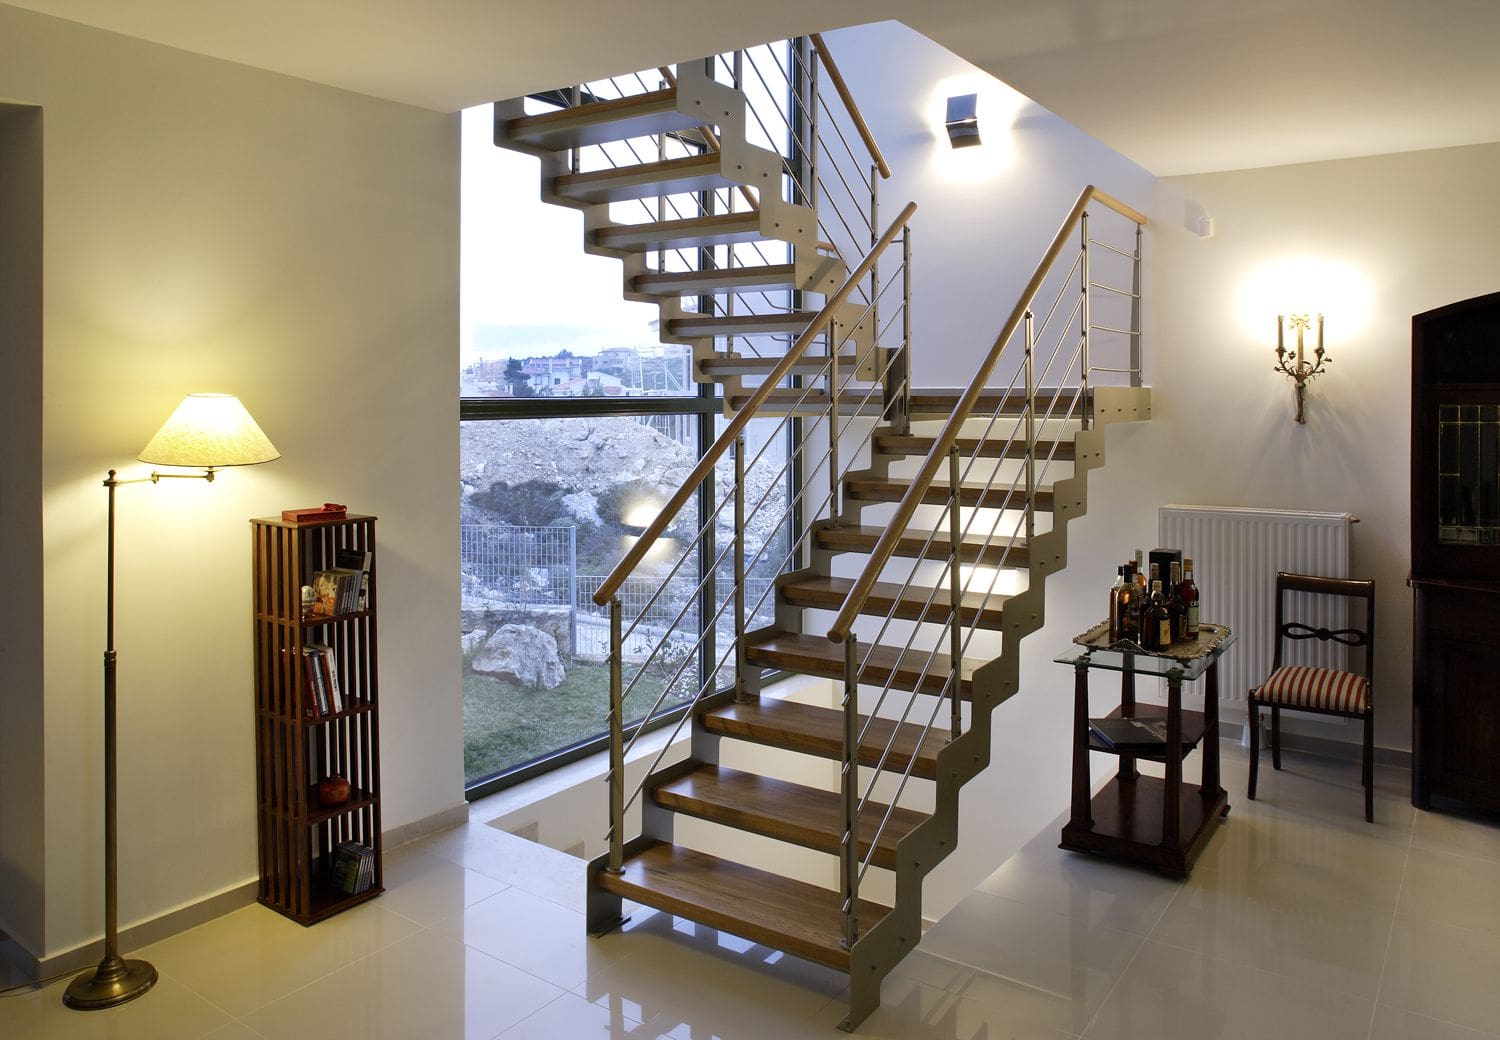 Как сделать лестницу на второй этаж самому